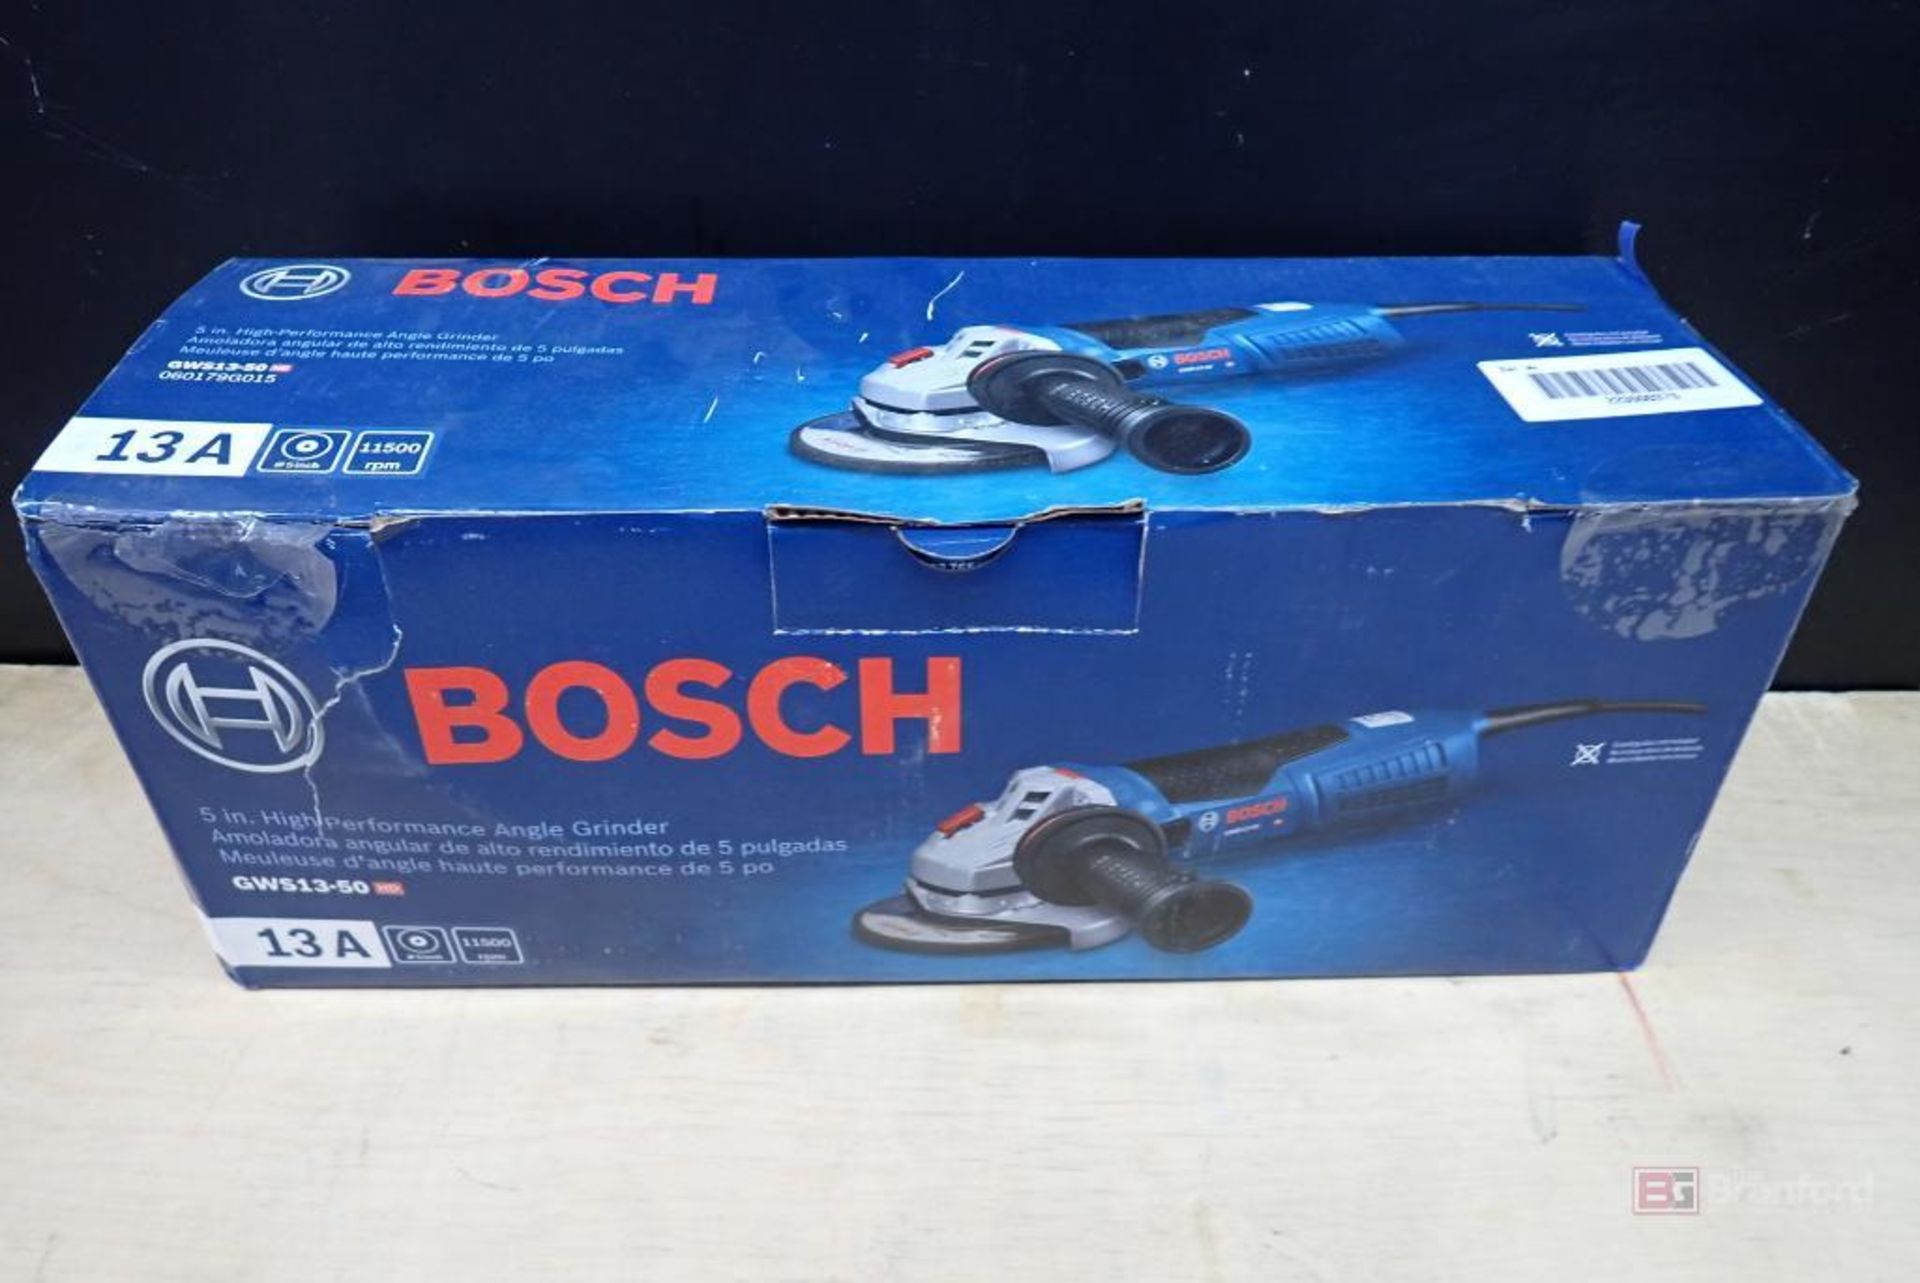 Bosch GWS13-50 Angle Grinder - Bild 3 aus 3